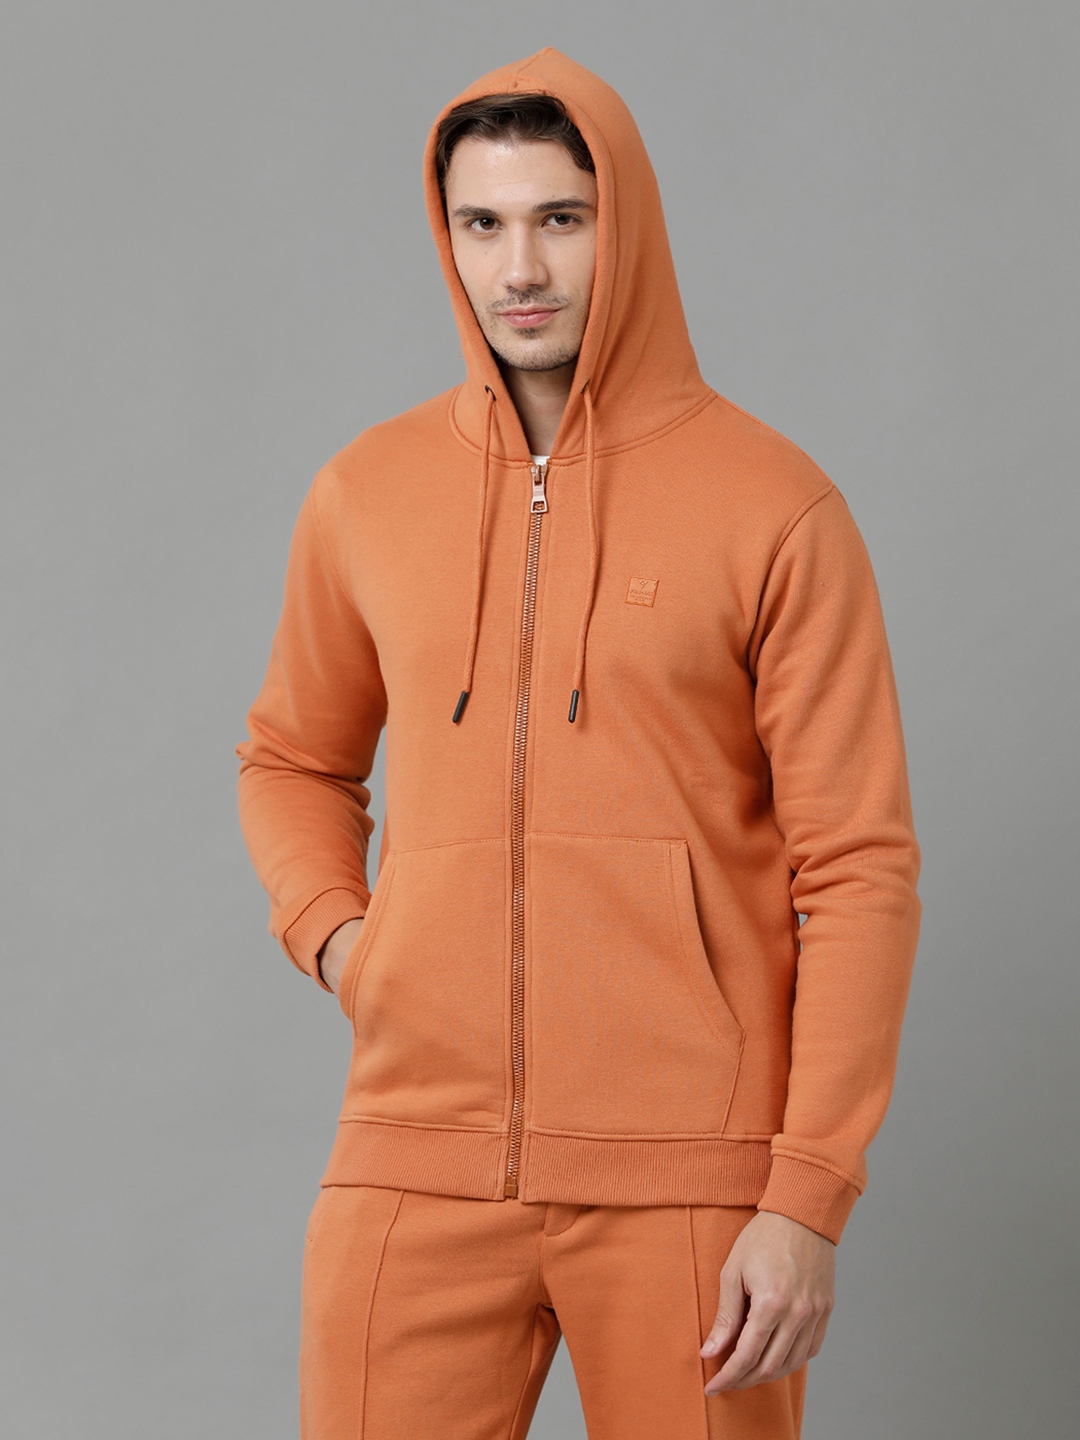 Men's Orange Fleece Solid hoodie